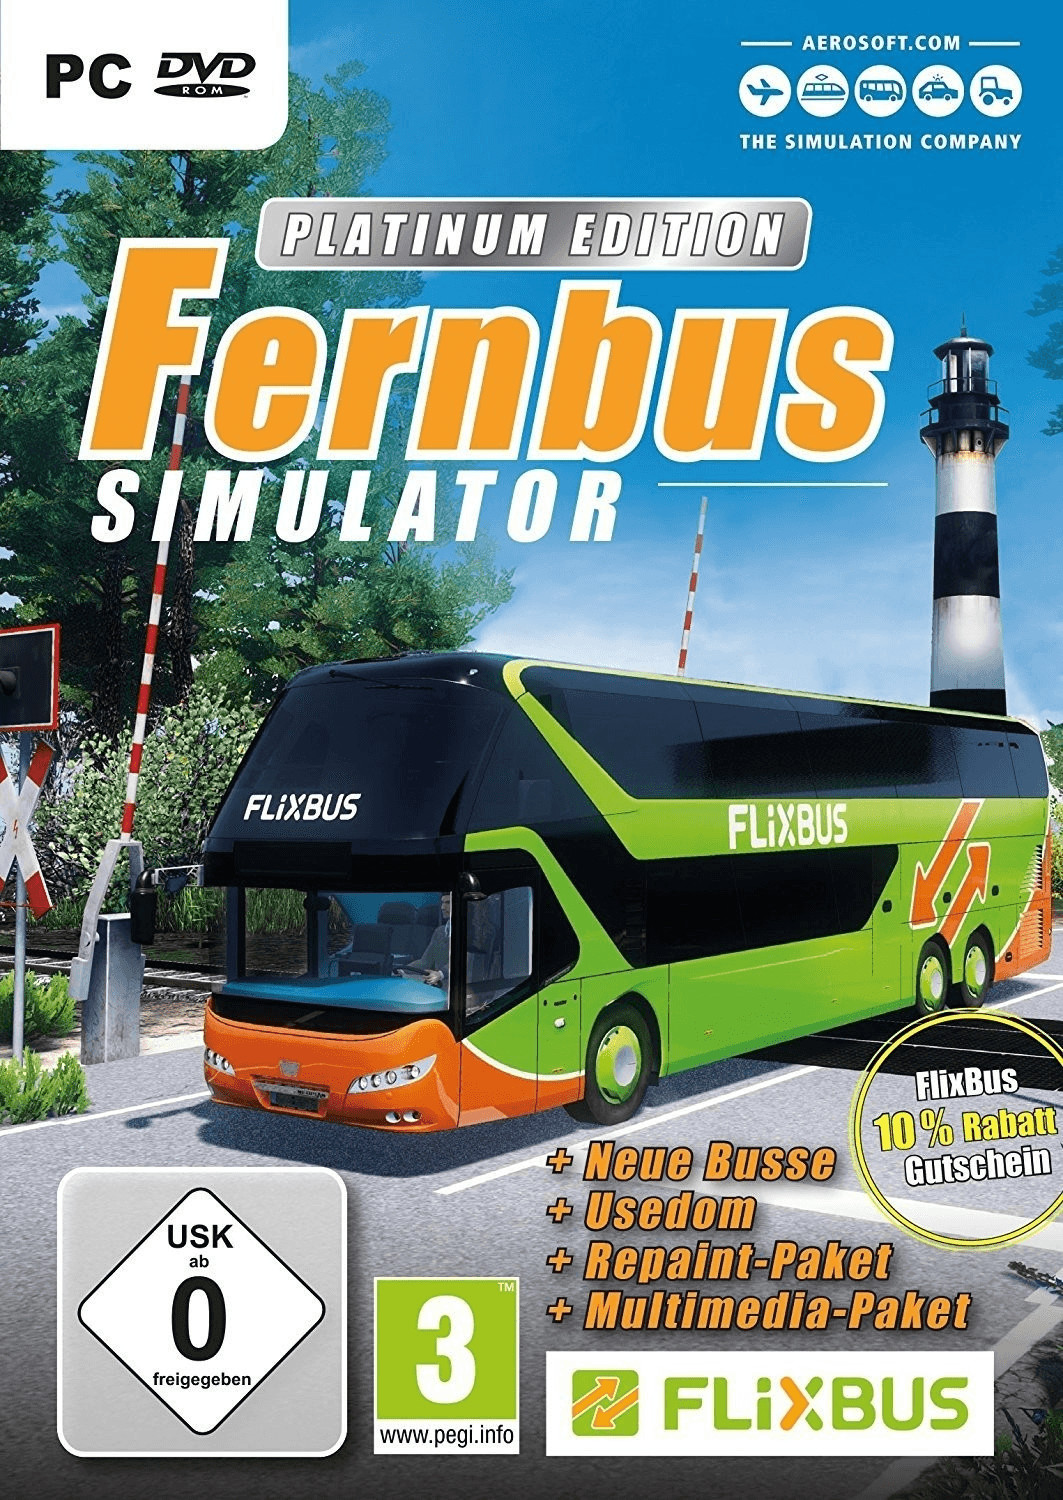 fernbus simulator trainer